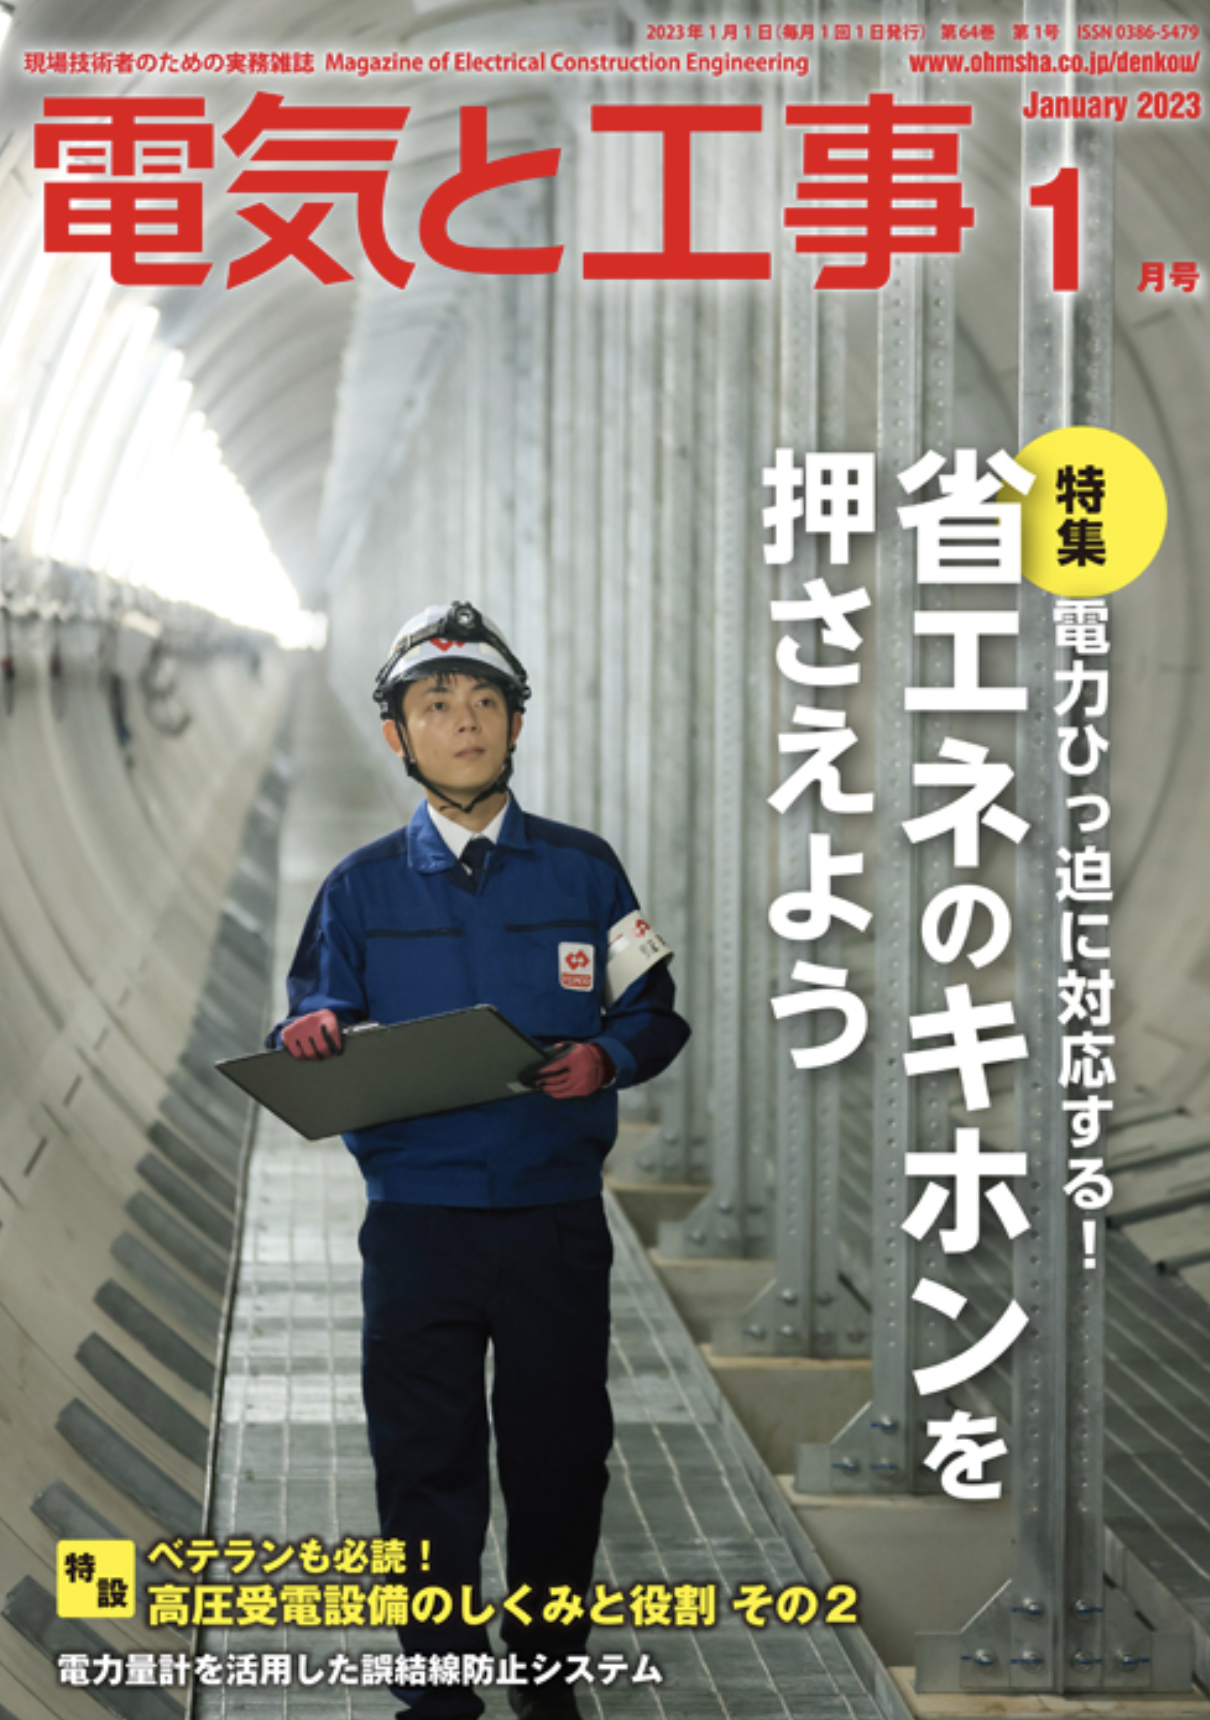 【新刊トピックス 2022年12月】電気と工事 2023年1月号 (第64巻第1号通巻833号)の画像